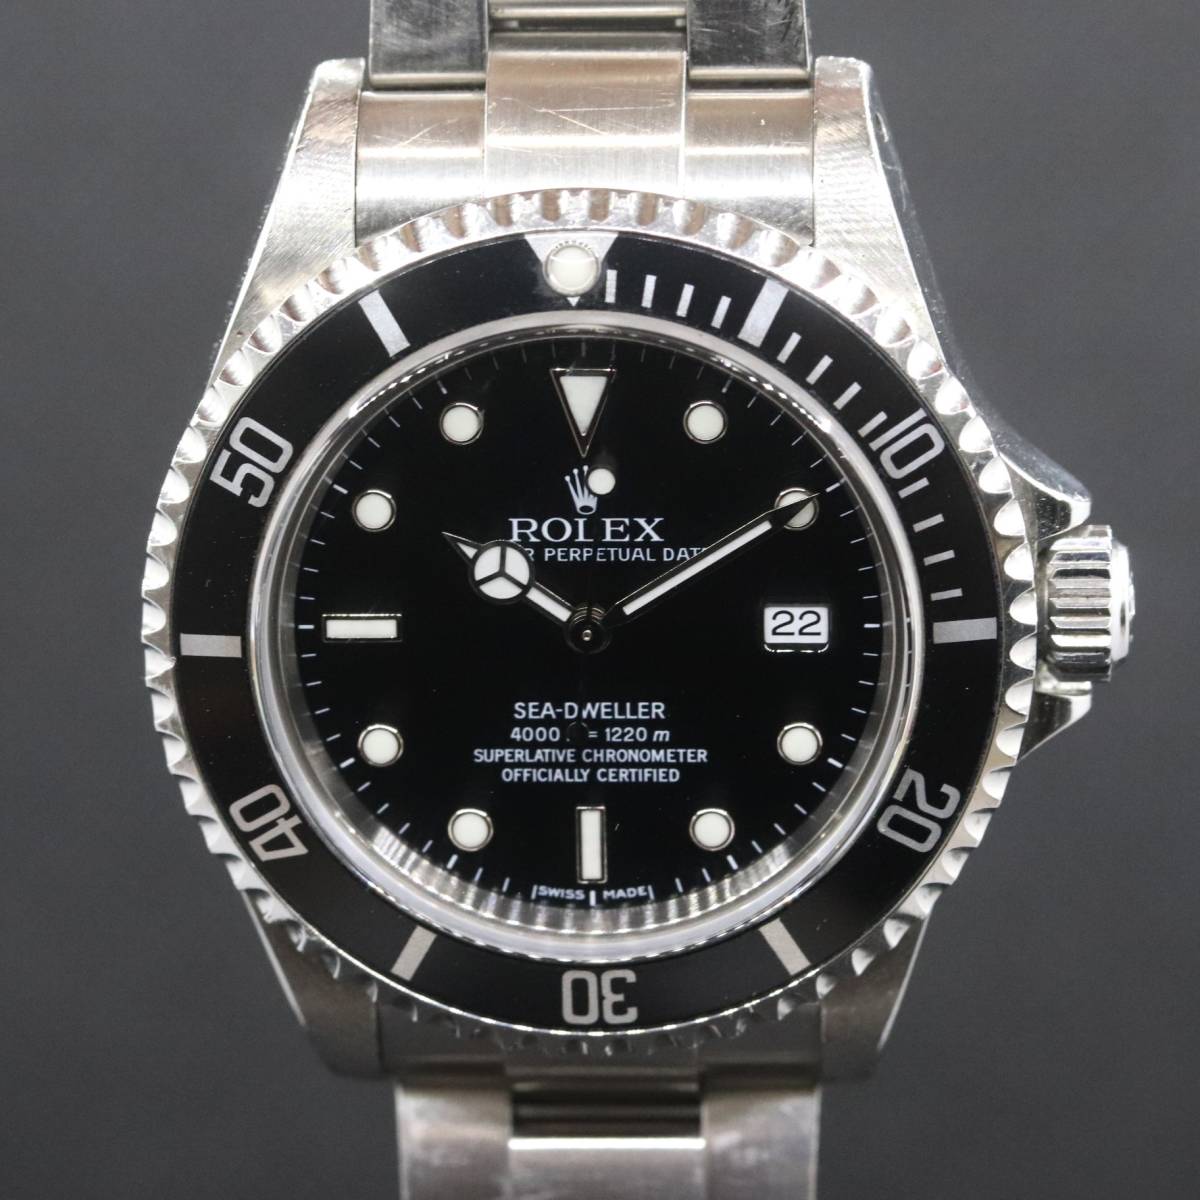 ロレックス シードゥエラー 16600 自動巻き cal.3135 メンズ腕時計 K番 黒文字盤 純正SSベルト ROREXの画像1